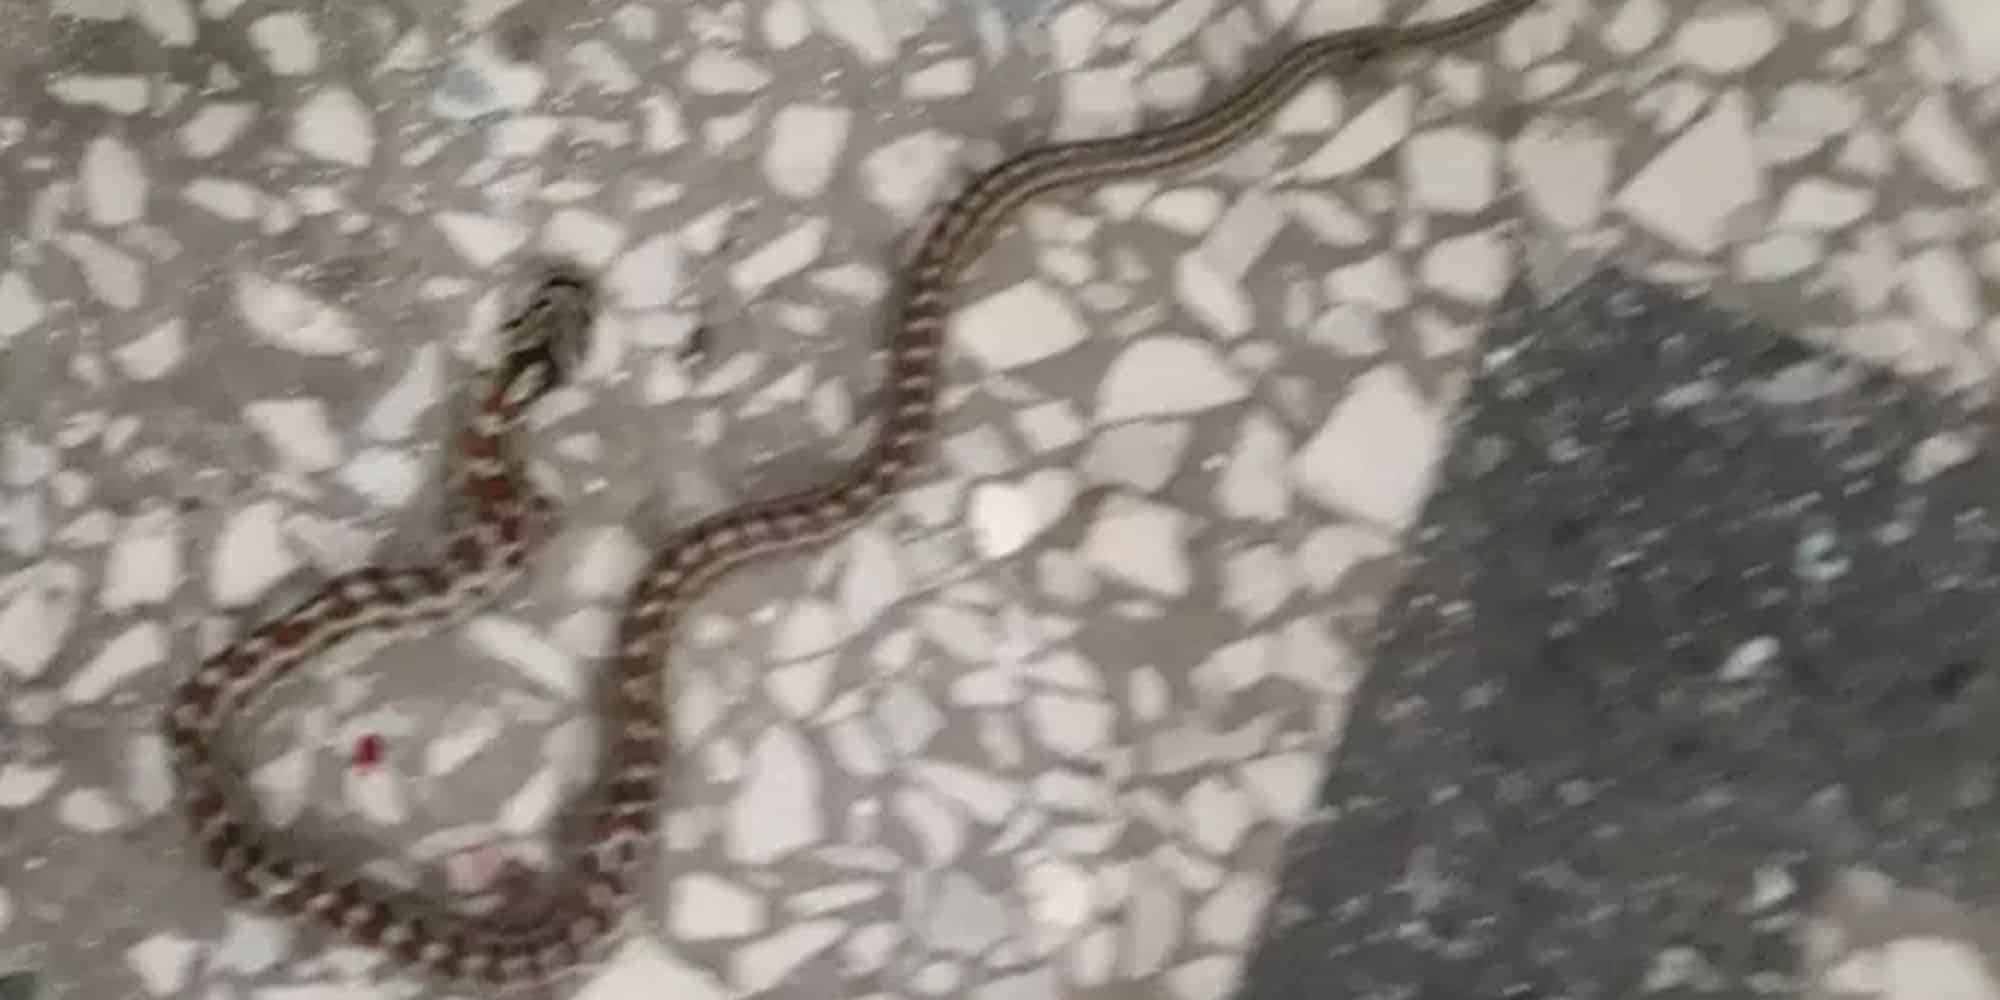 Αναστάτωση σε νηπιαγωγείο στο Λαγκαδά - Εντοπίστηκαν φίδια (εικόνα)